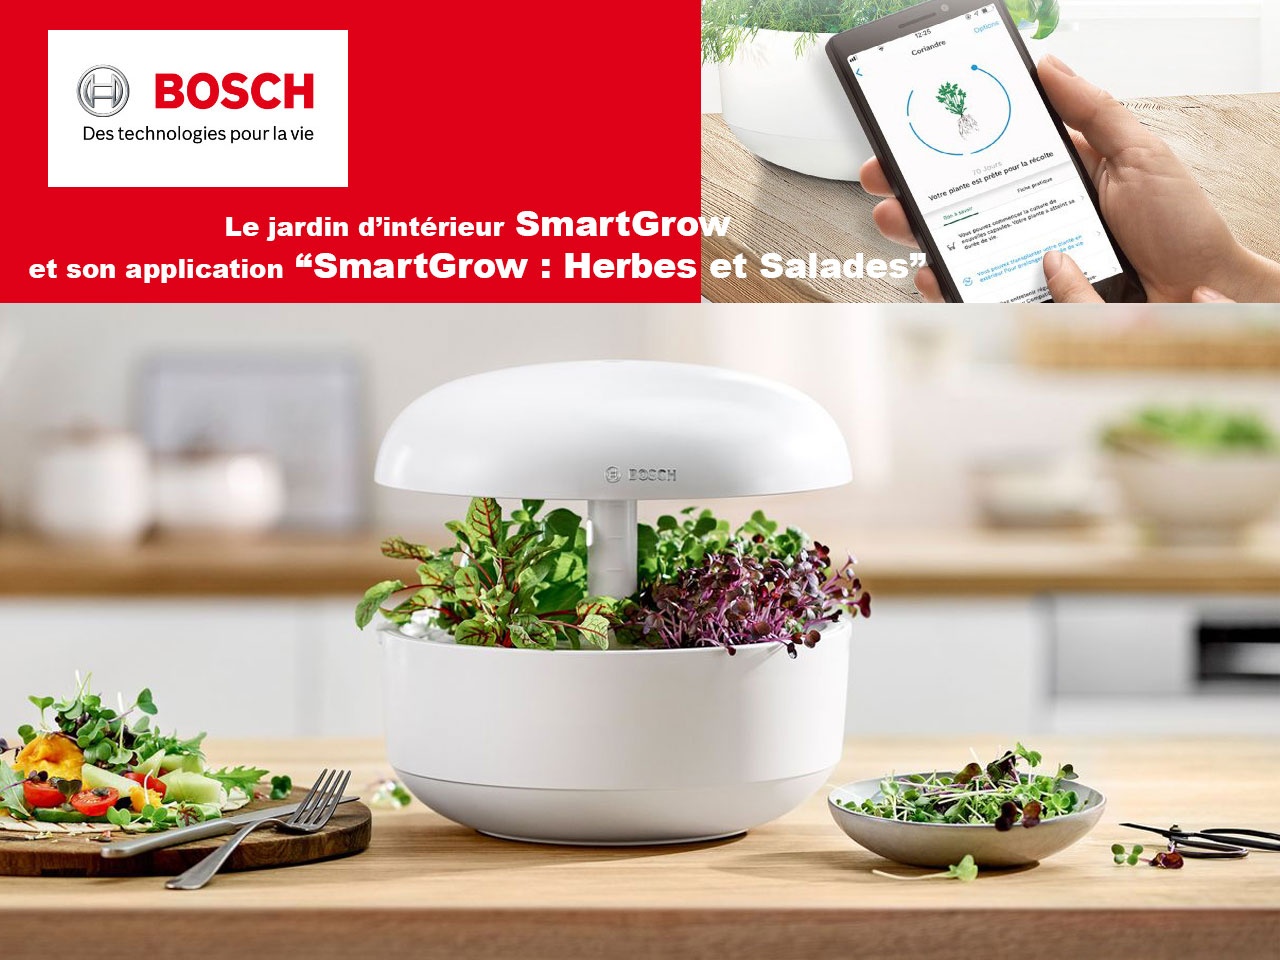 L’application « SmartGrow de Bosch : Herbes et Salades », pour un jardinage d’intérieur simplifié